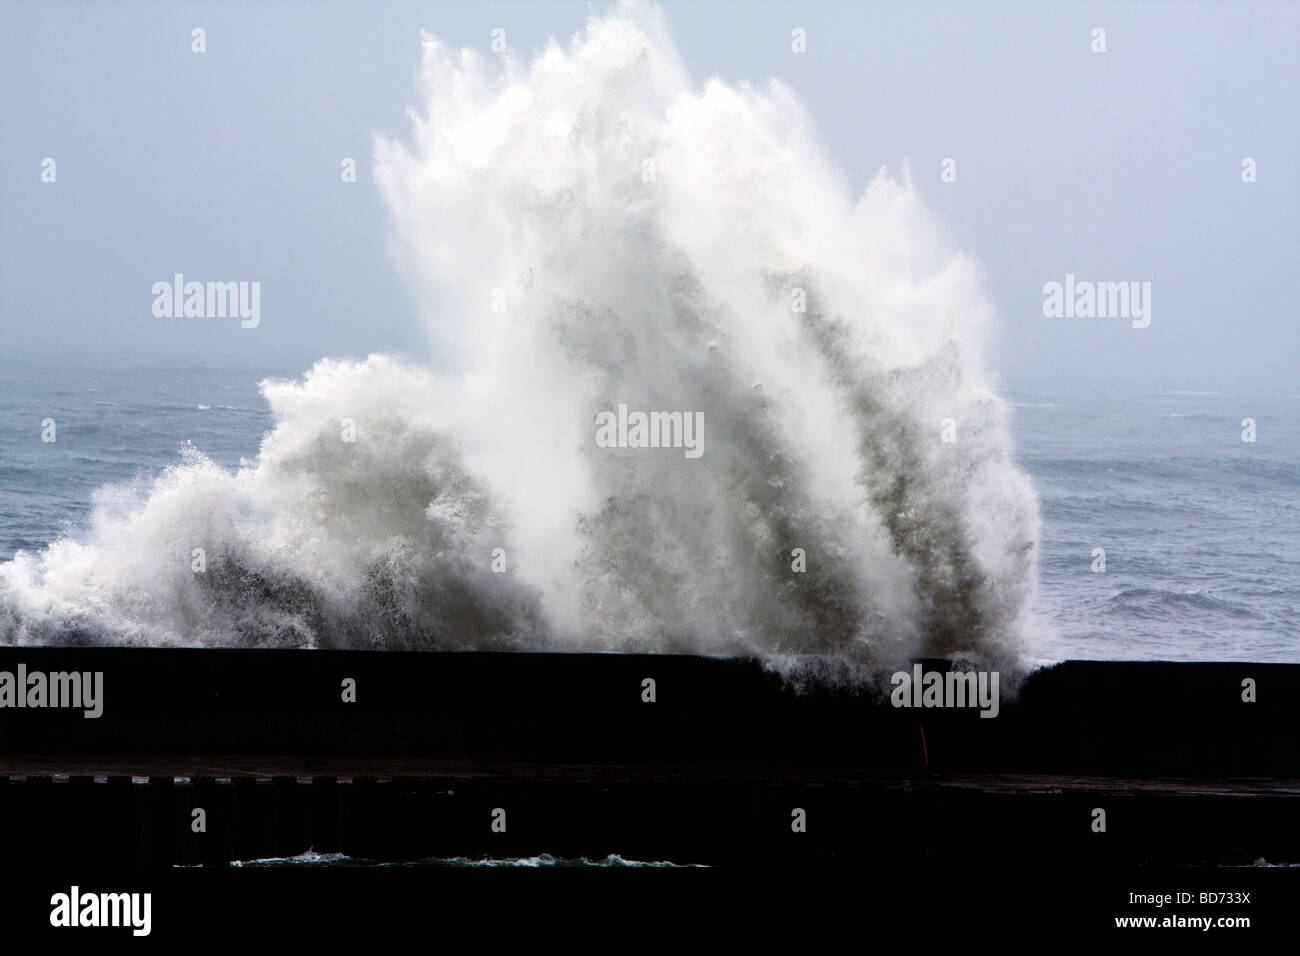 Il tifone Morakot invia grandi onde che si infrangono nel muro frangiflutti in un porto di Hualien City come colpisce la costa orientale di Taiwan in Agosto 8, 2009 Foto Stock